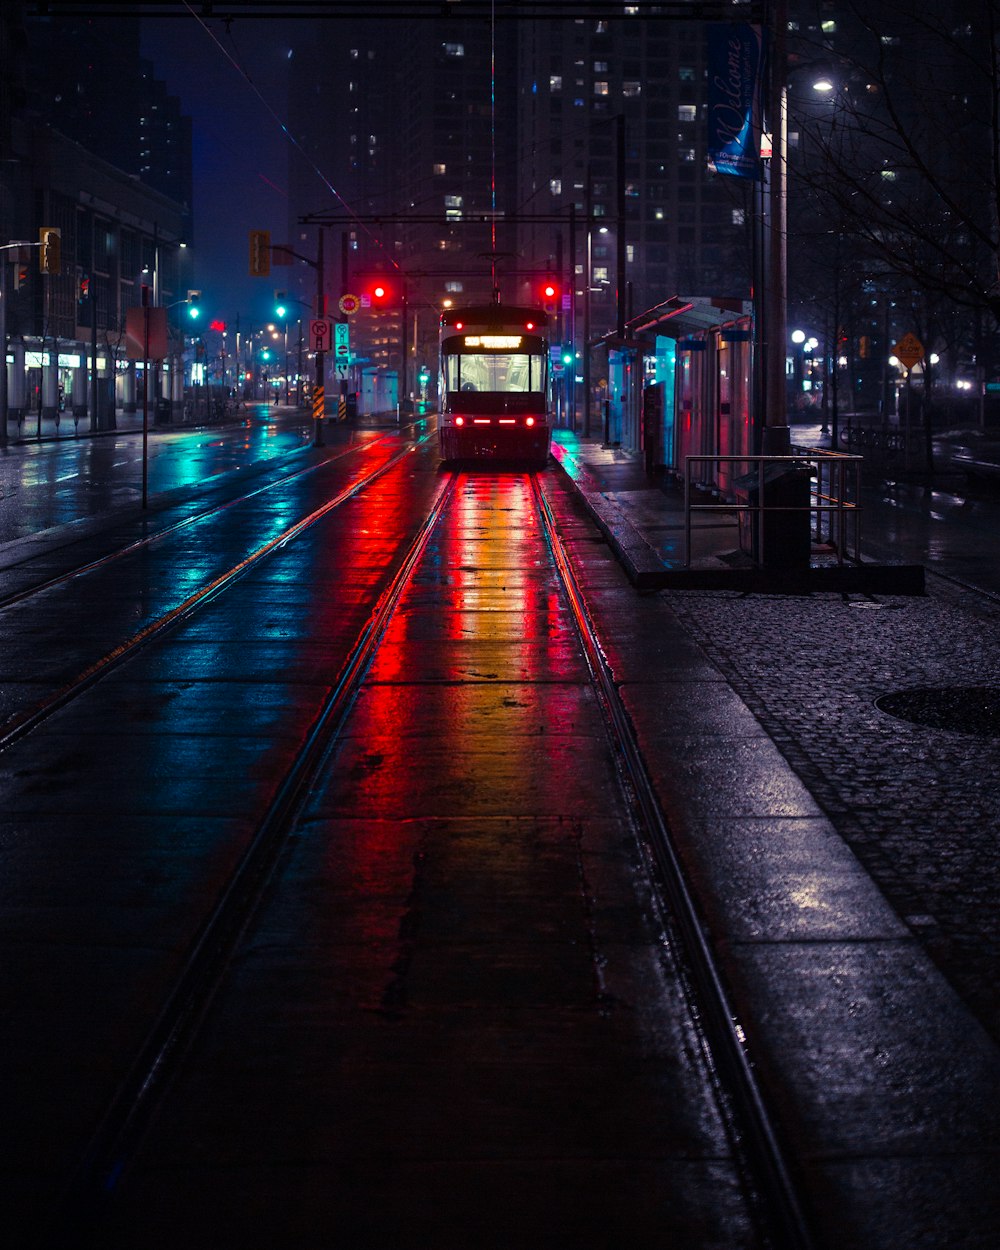 Foto del tranvía al lado de la estación de espera durante la noche